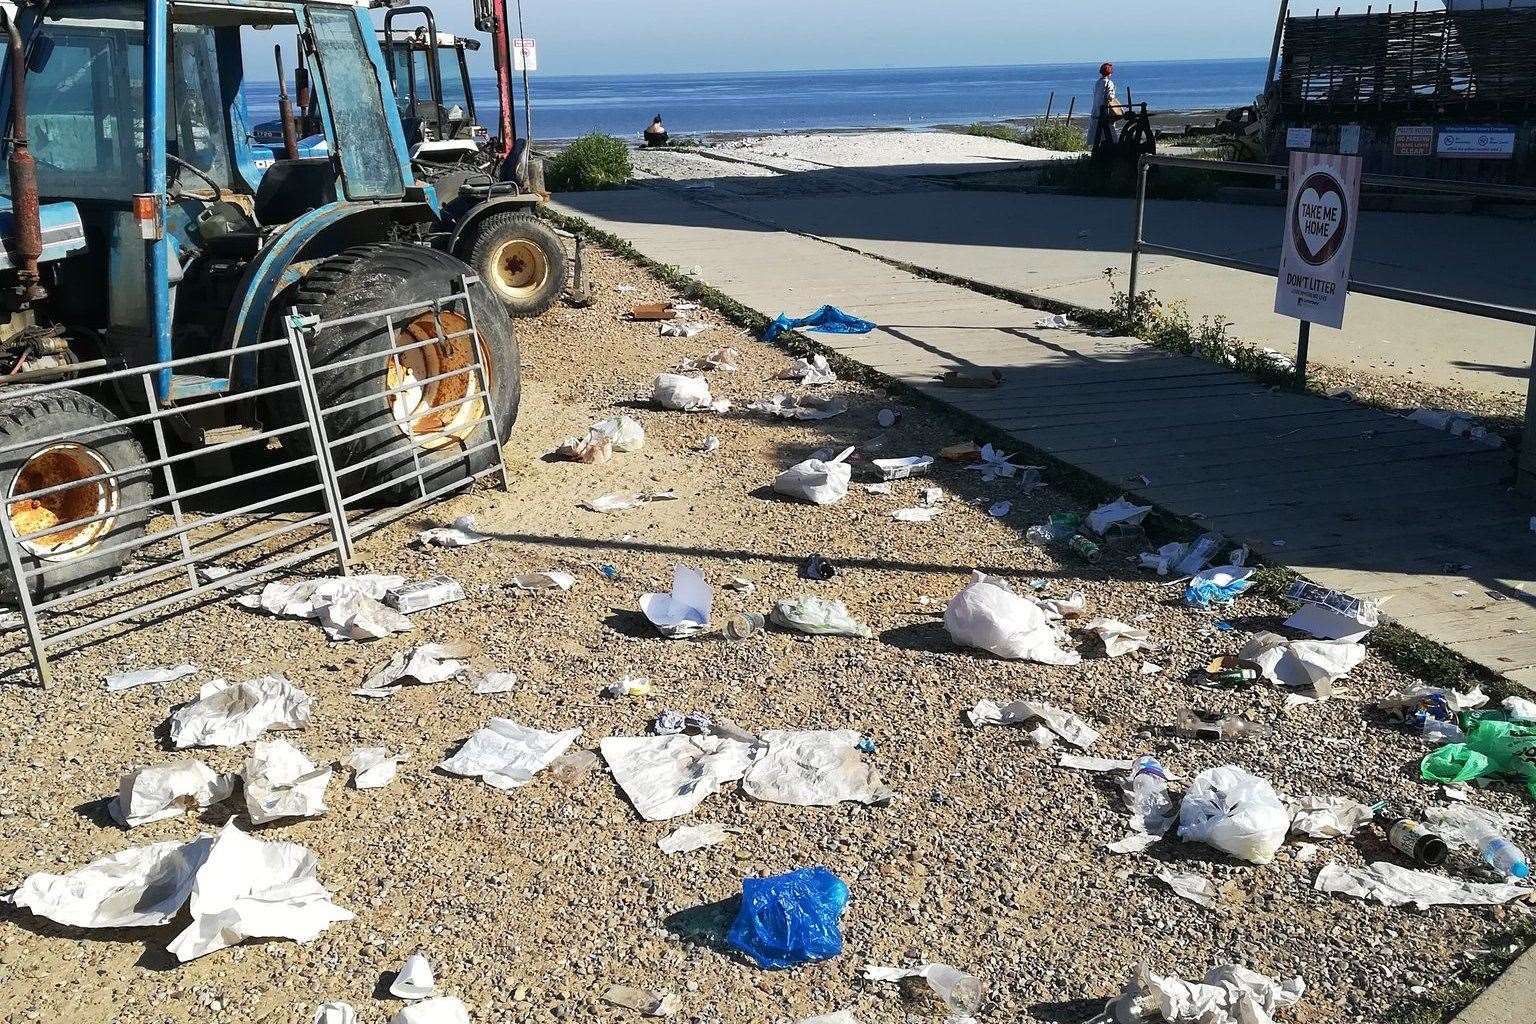 Litter strewn across Whitstable beach. Picture: Daniel Farmer